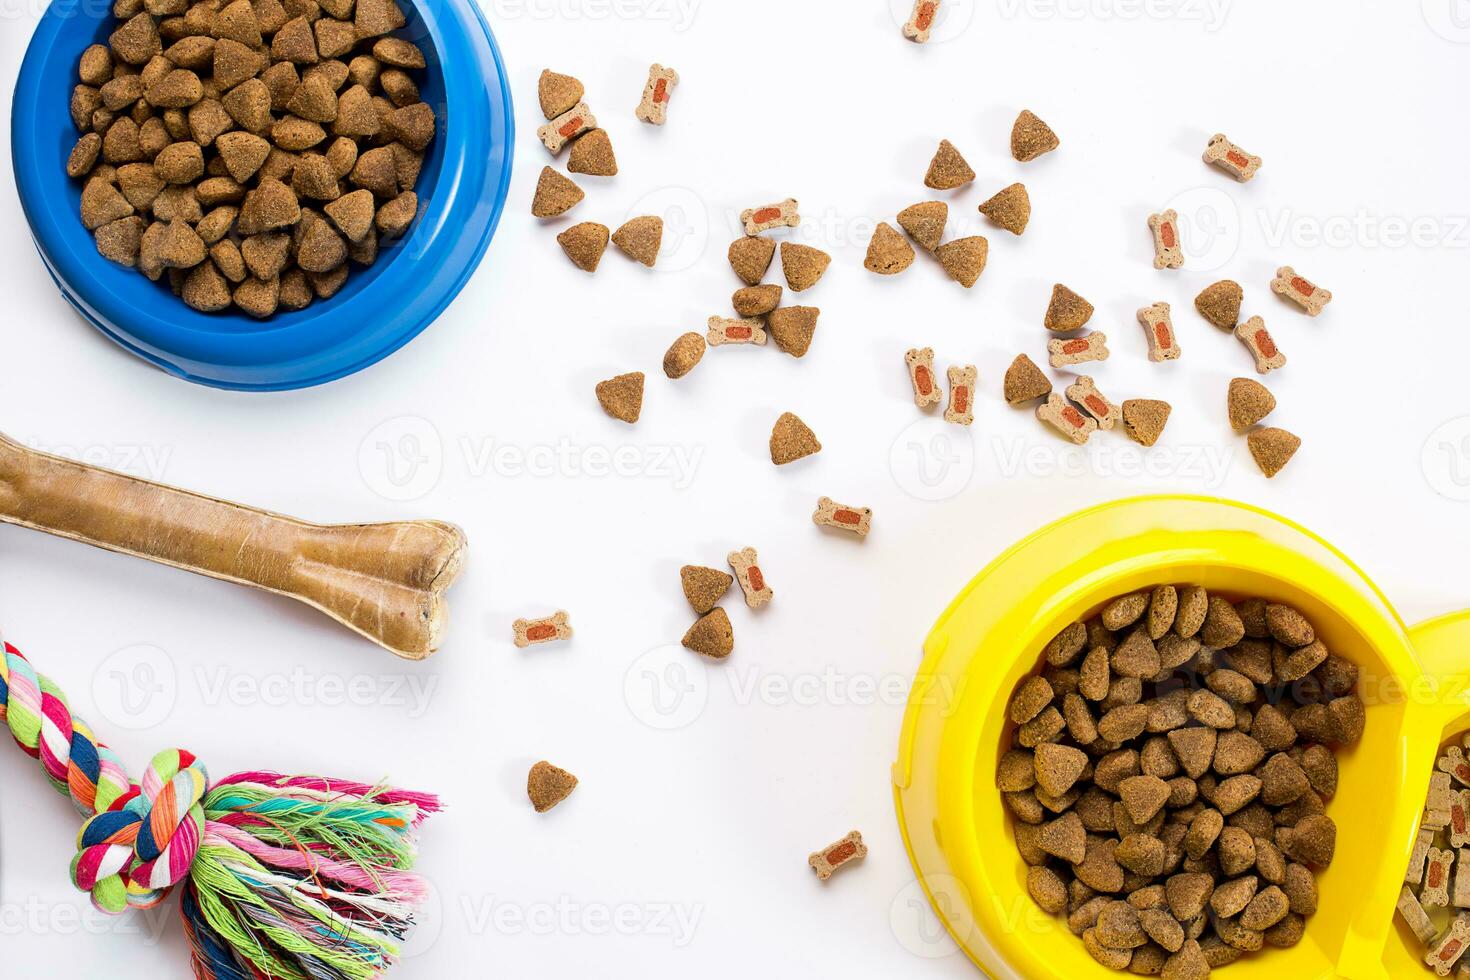 asciutto animale domestico cibo nel ciotola e giocattoli per cani su bianca sfondo superiore Visualizza foto